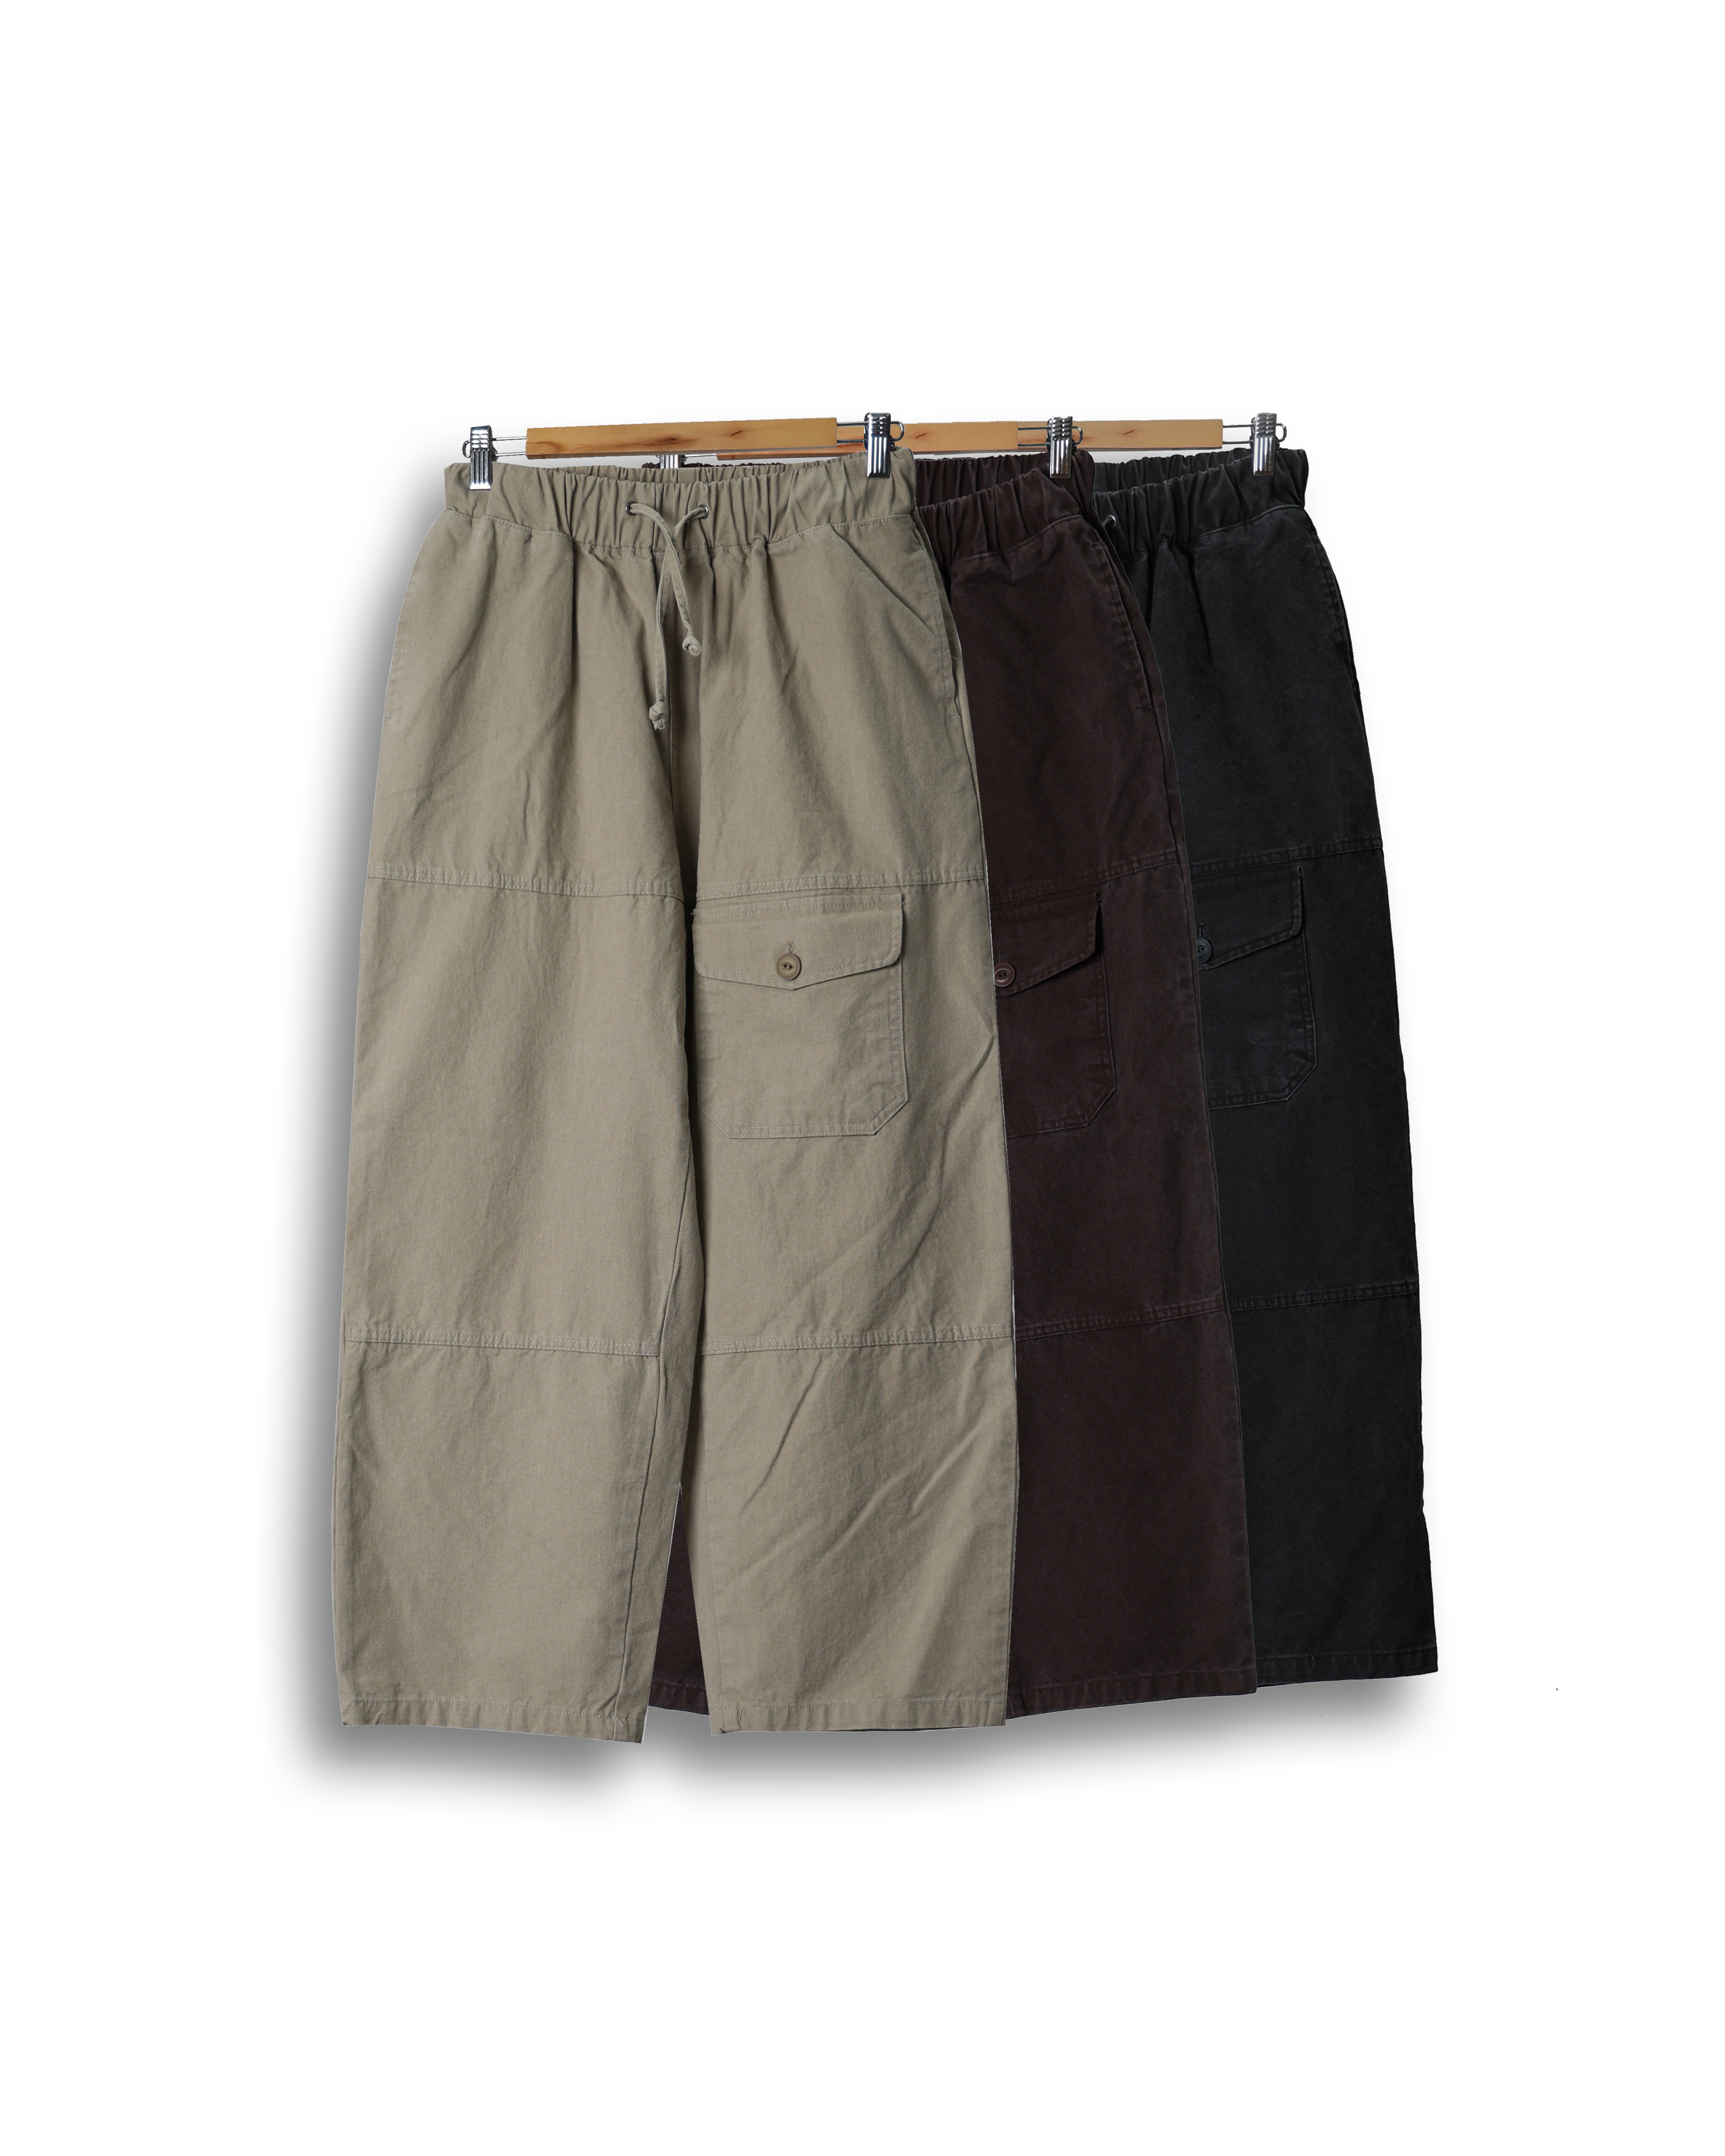 GAUGE Cation Pocket Washed Wide Pants (Charcoal/Wine/Beige)